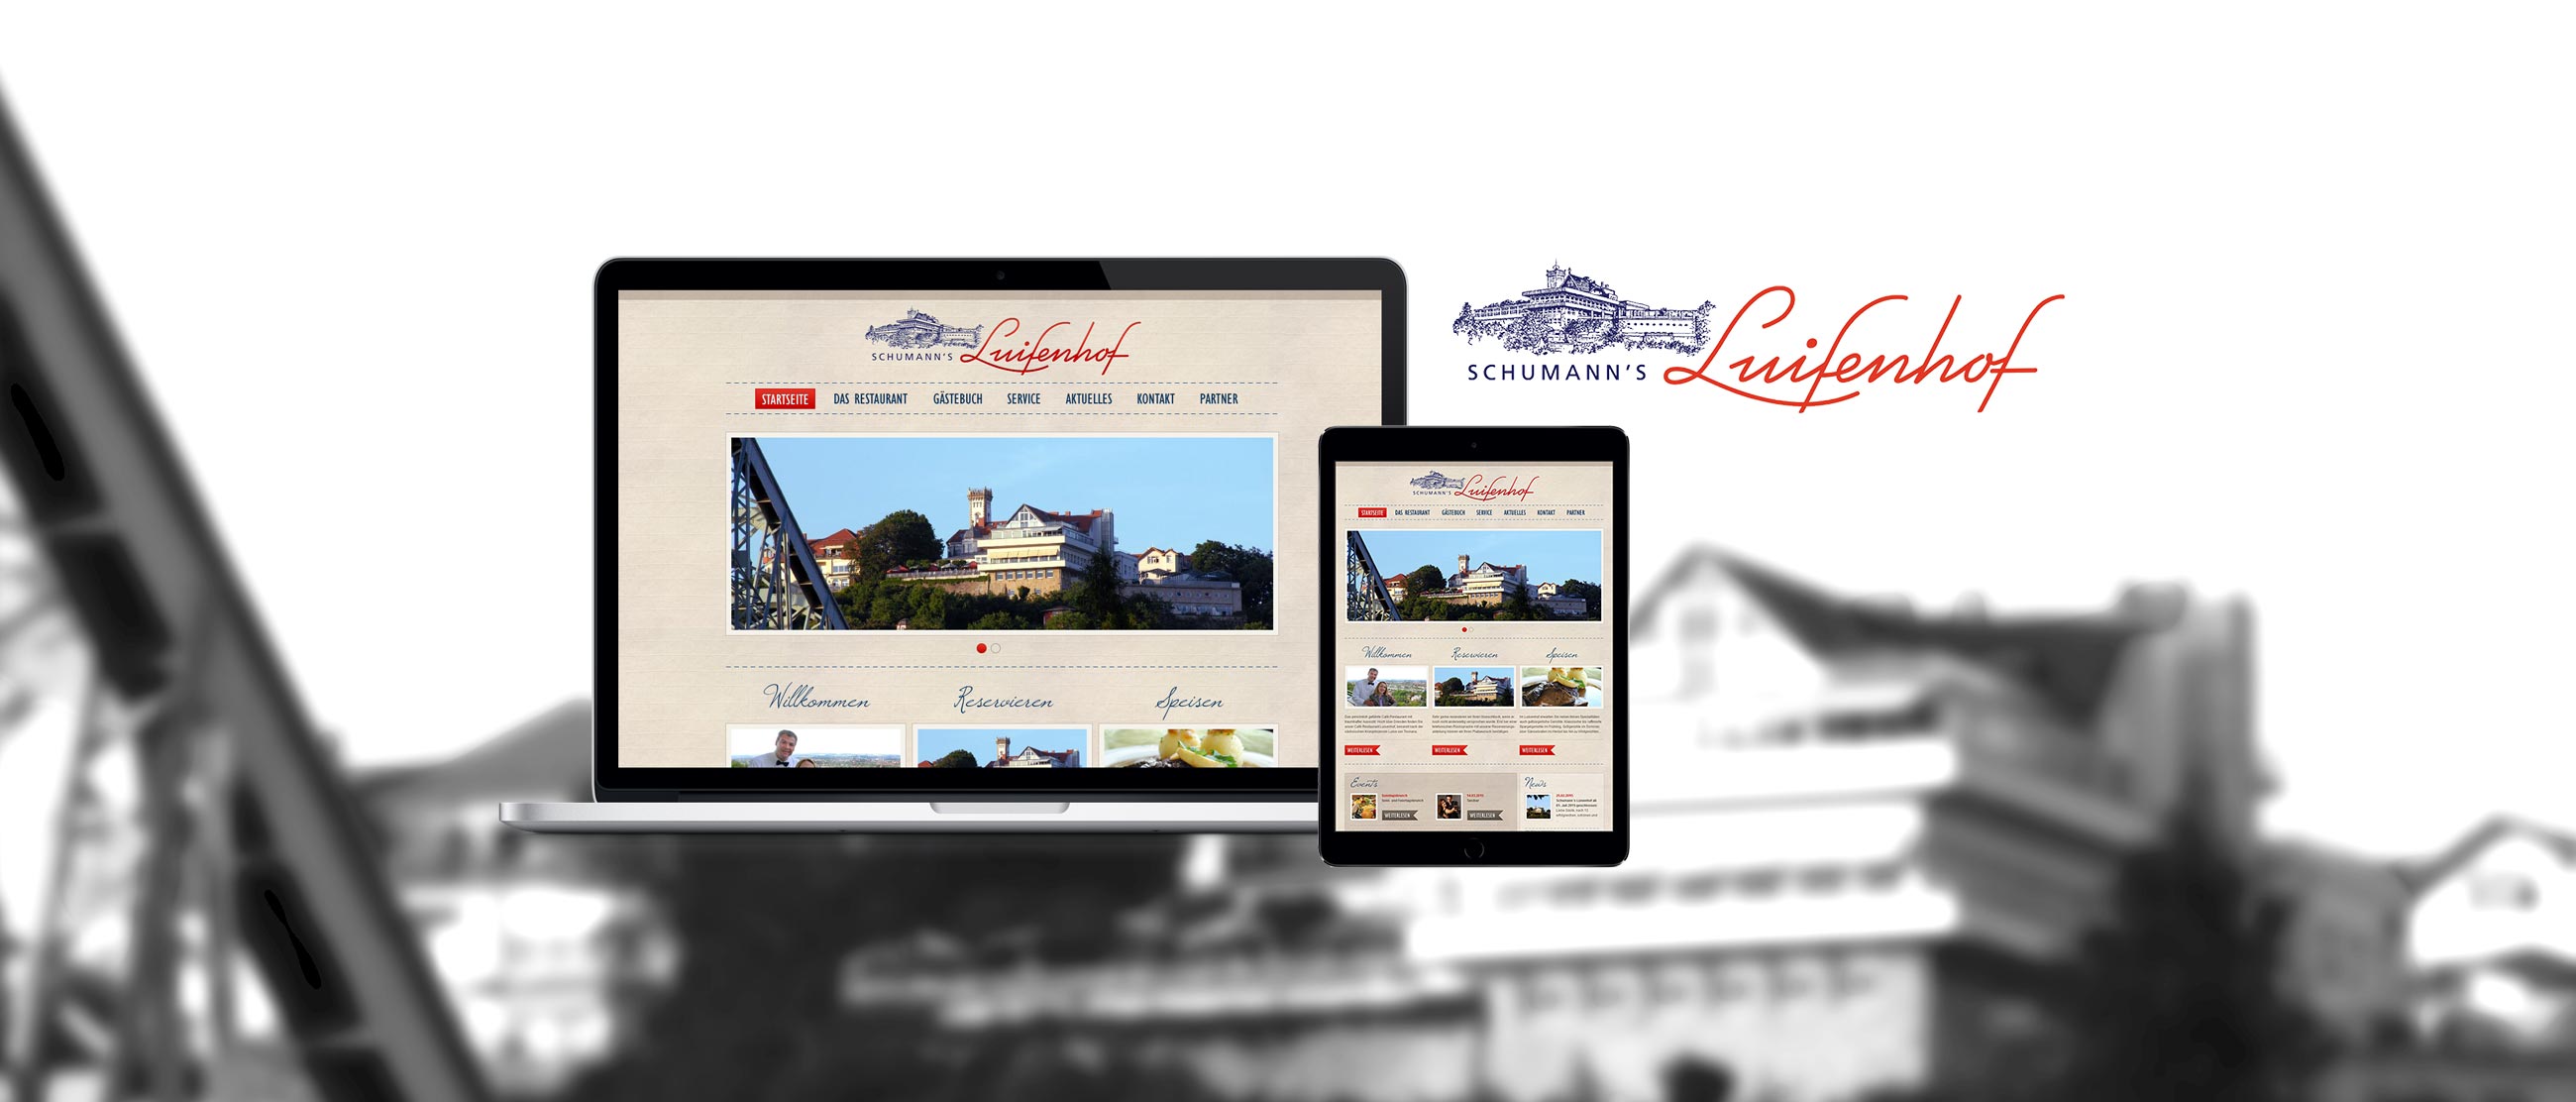 Luisenhof Dresden: Web-Relaunch mit Erstellung eines Responsive Designs für www. www.luisenhof-dresden.de